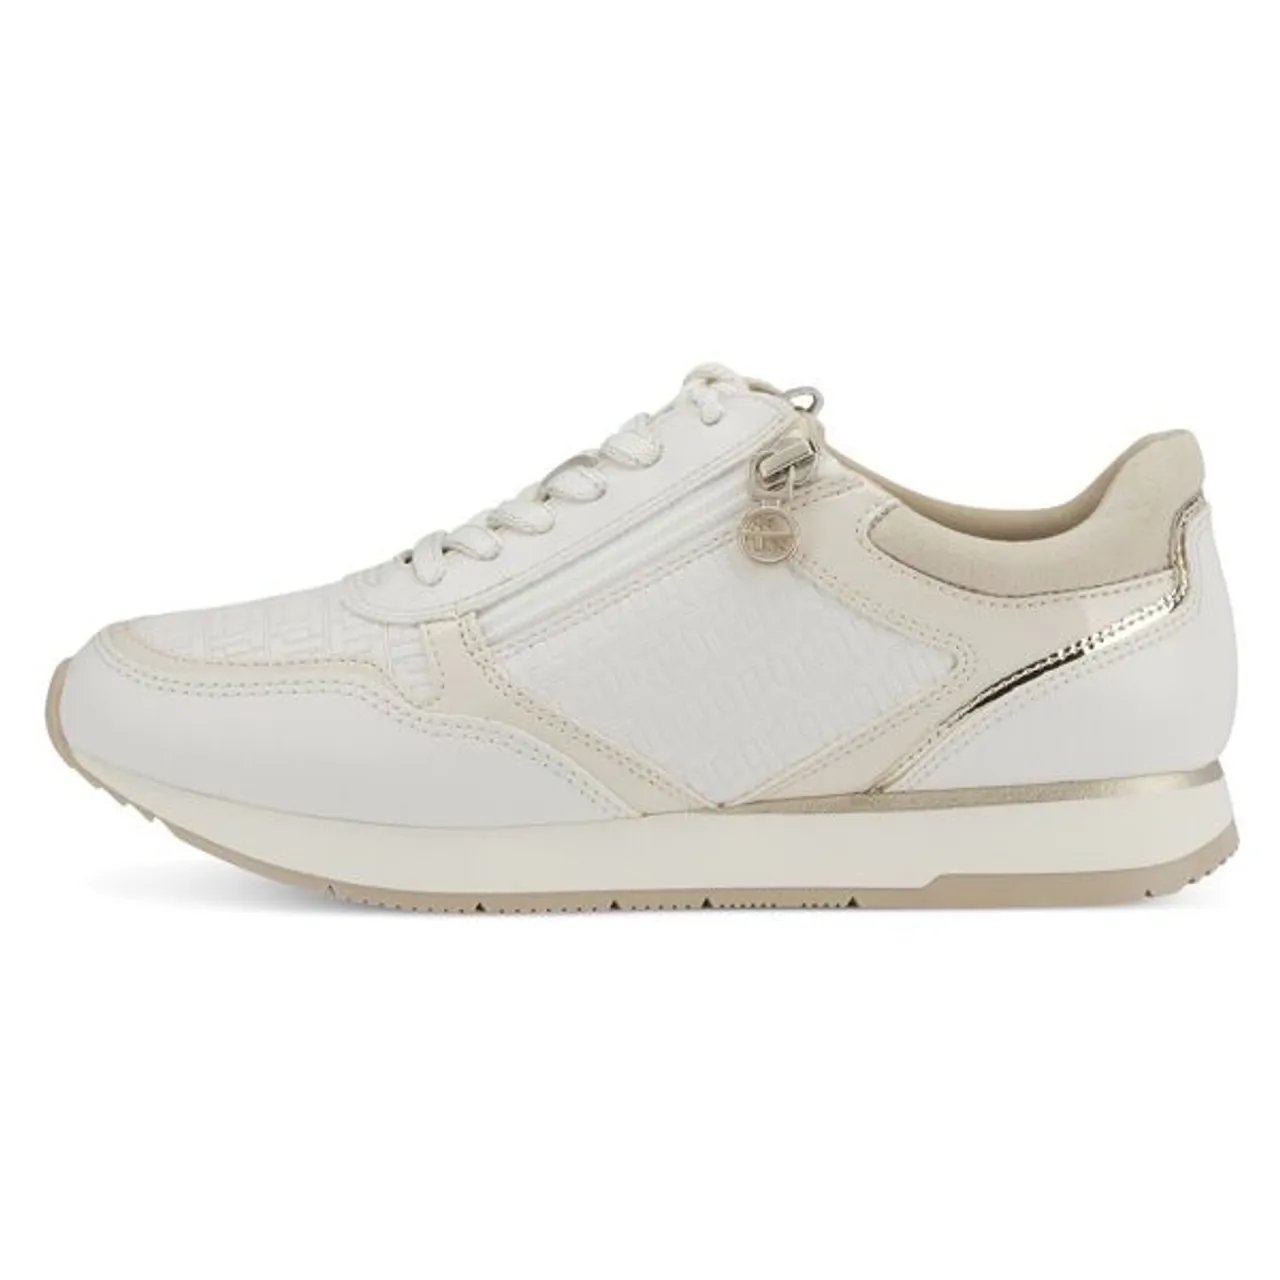 Sneaker TAMARIS Gr. 35, weiß (offwhite, kombiniert) Damen Schuhe Sneaker